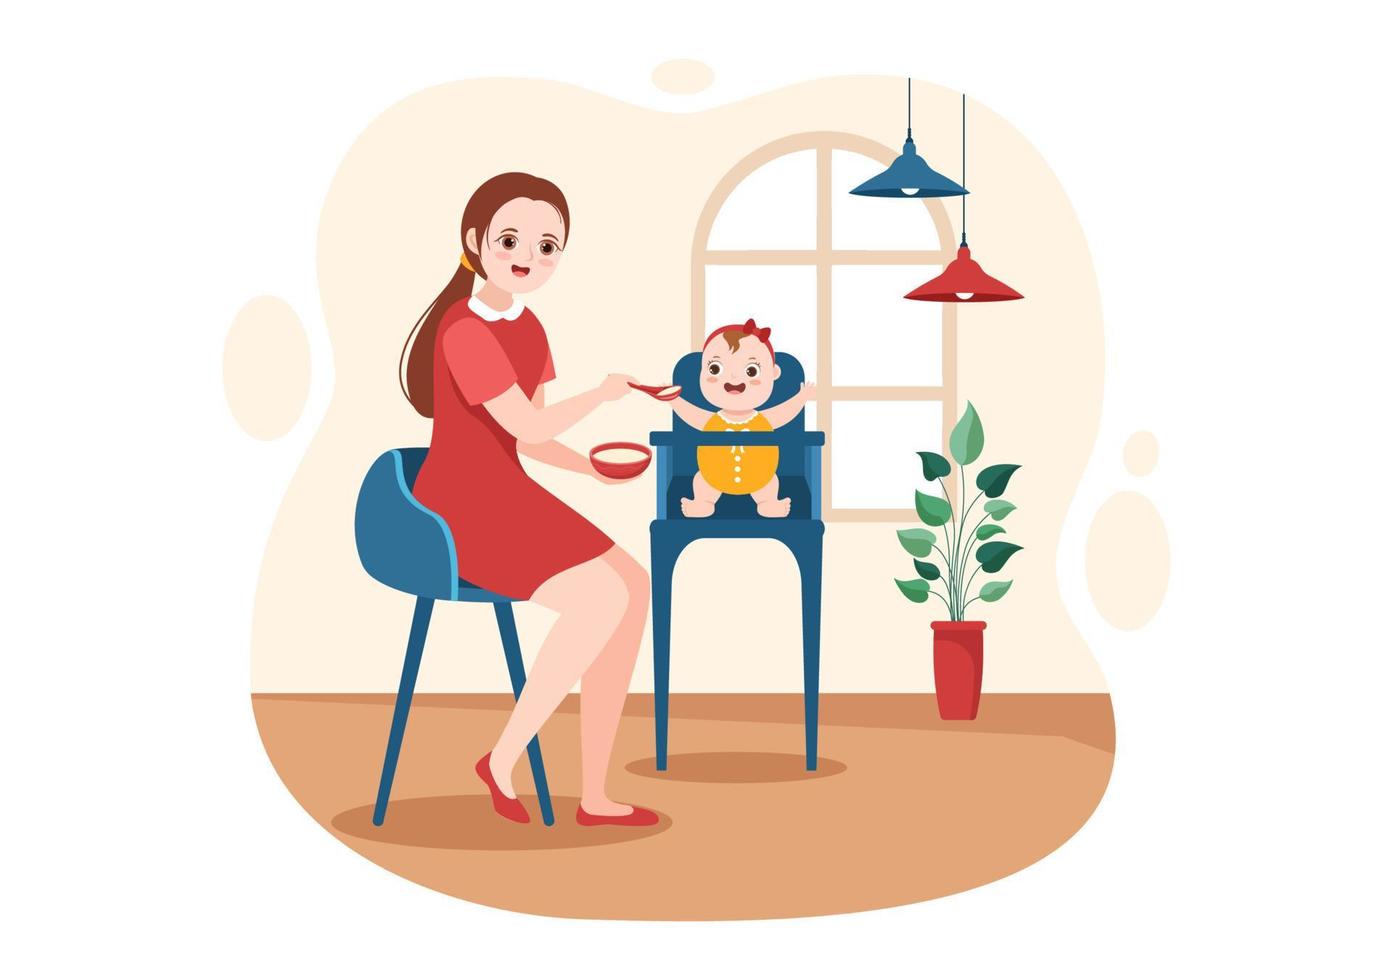 serviços de babá ou babá para cuidar das necessidades do bebê e brincar com as crianças na ilustração de modelo desenhado à mão de desenho plano vetor